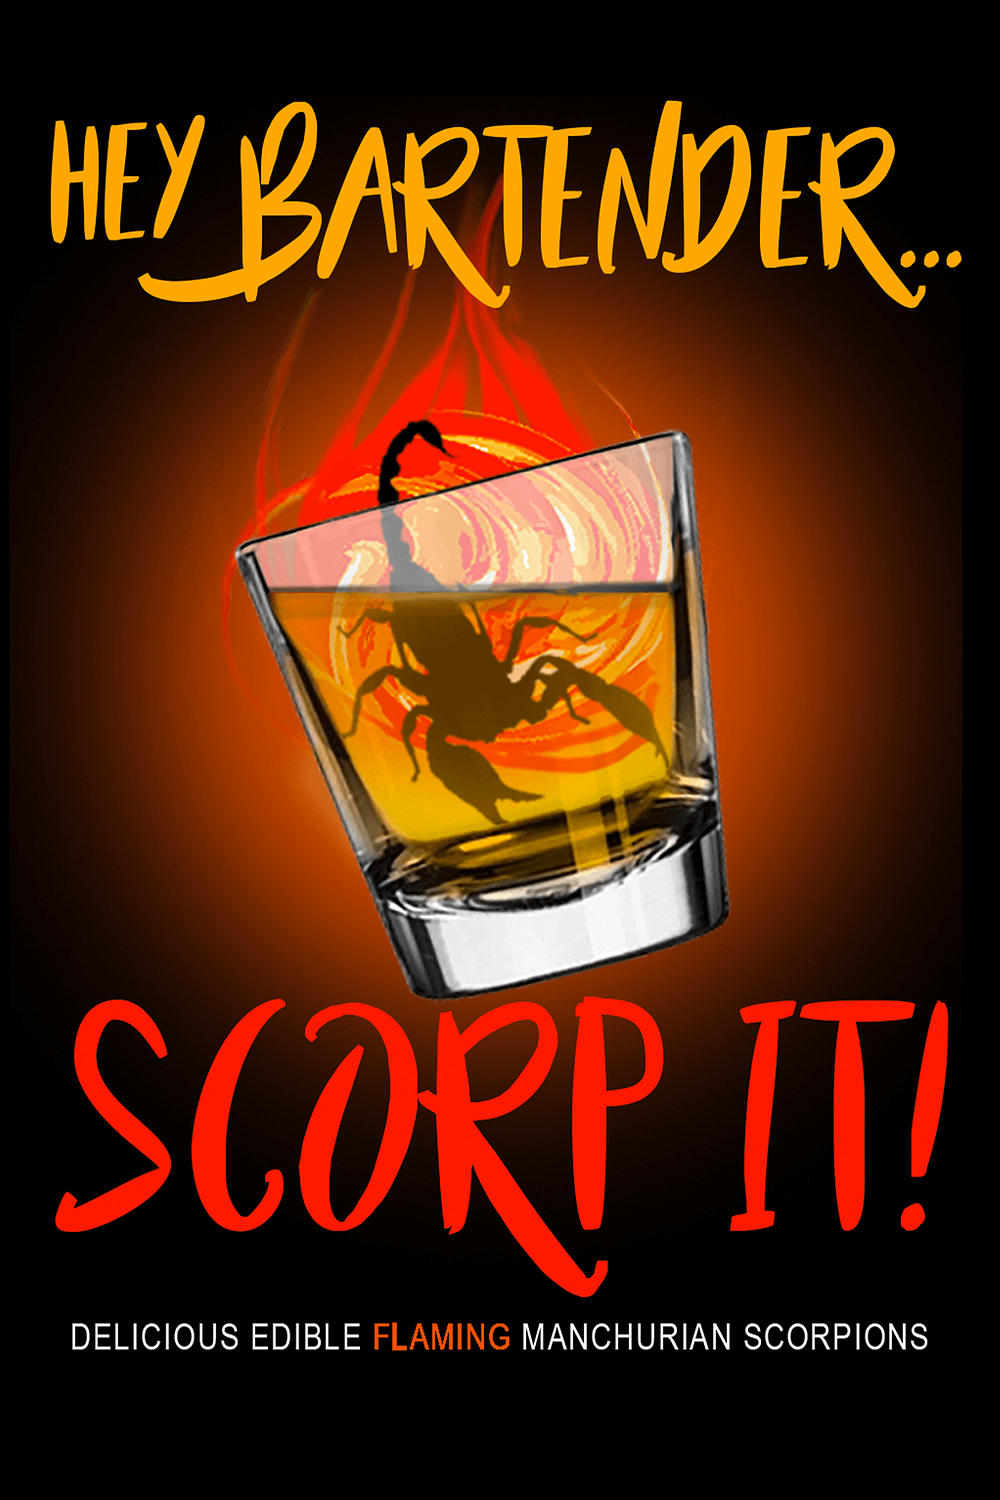 Scorp-It Scorpions